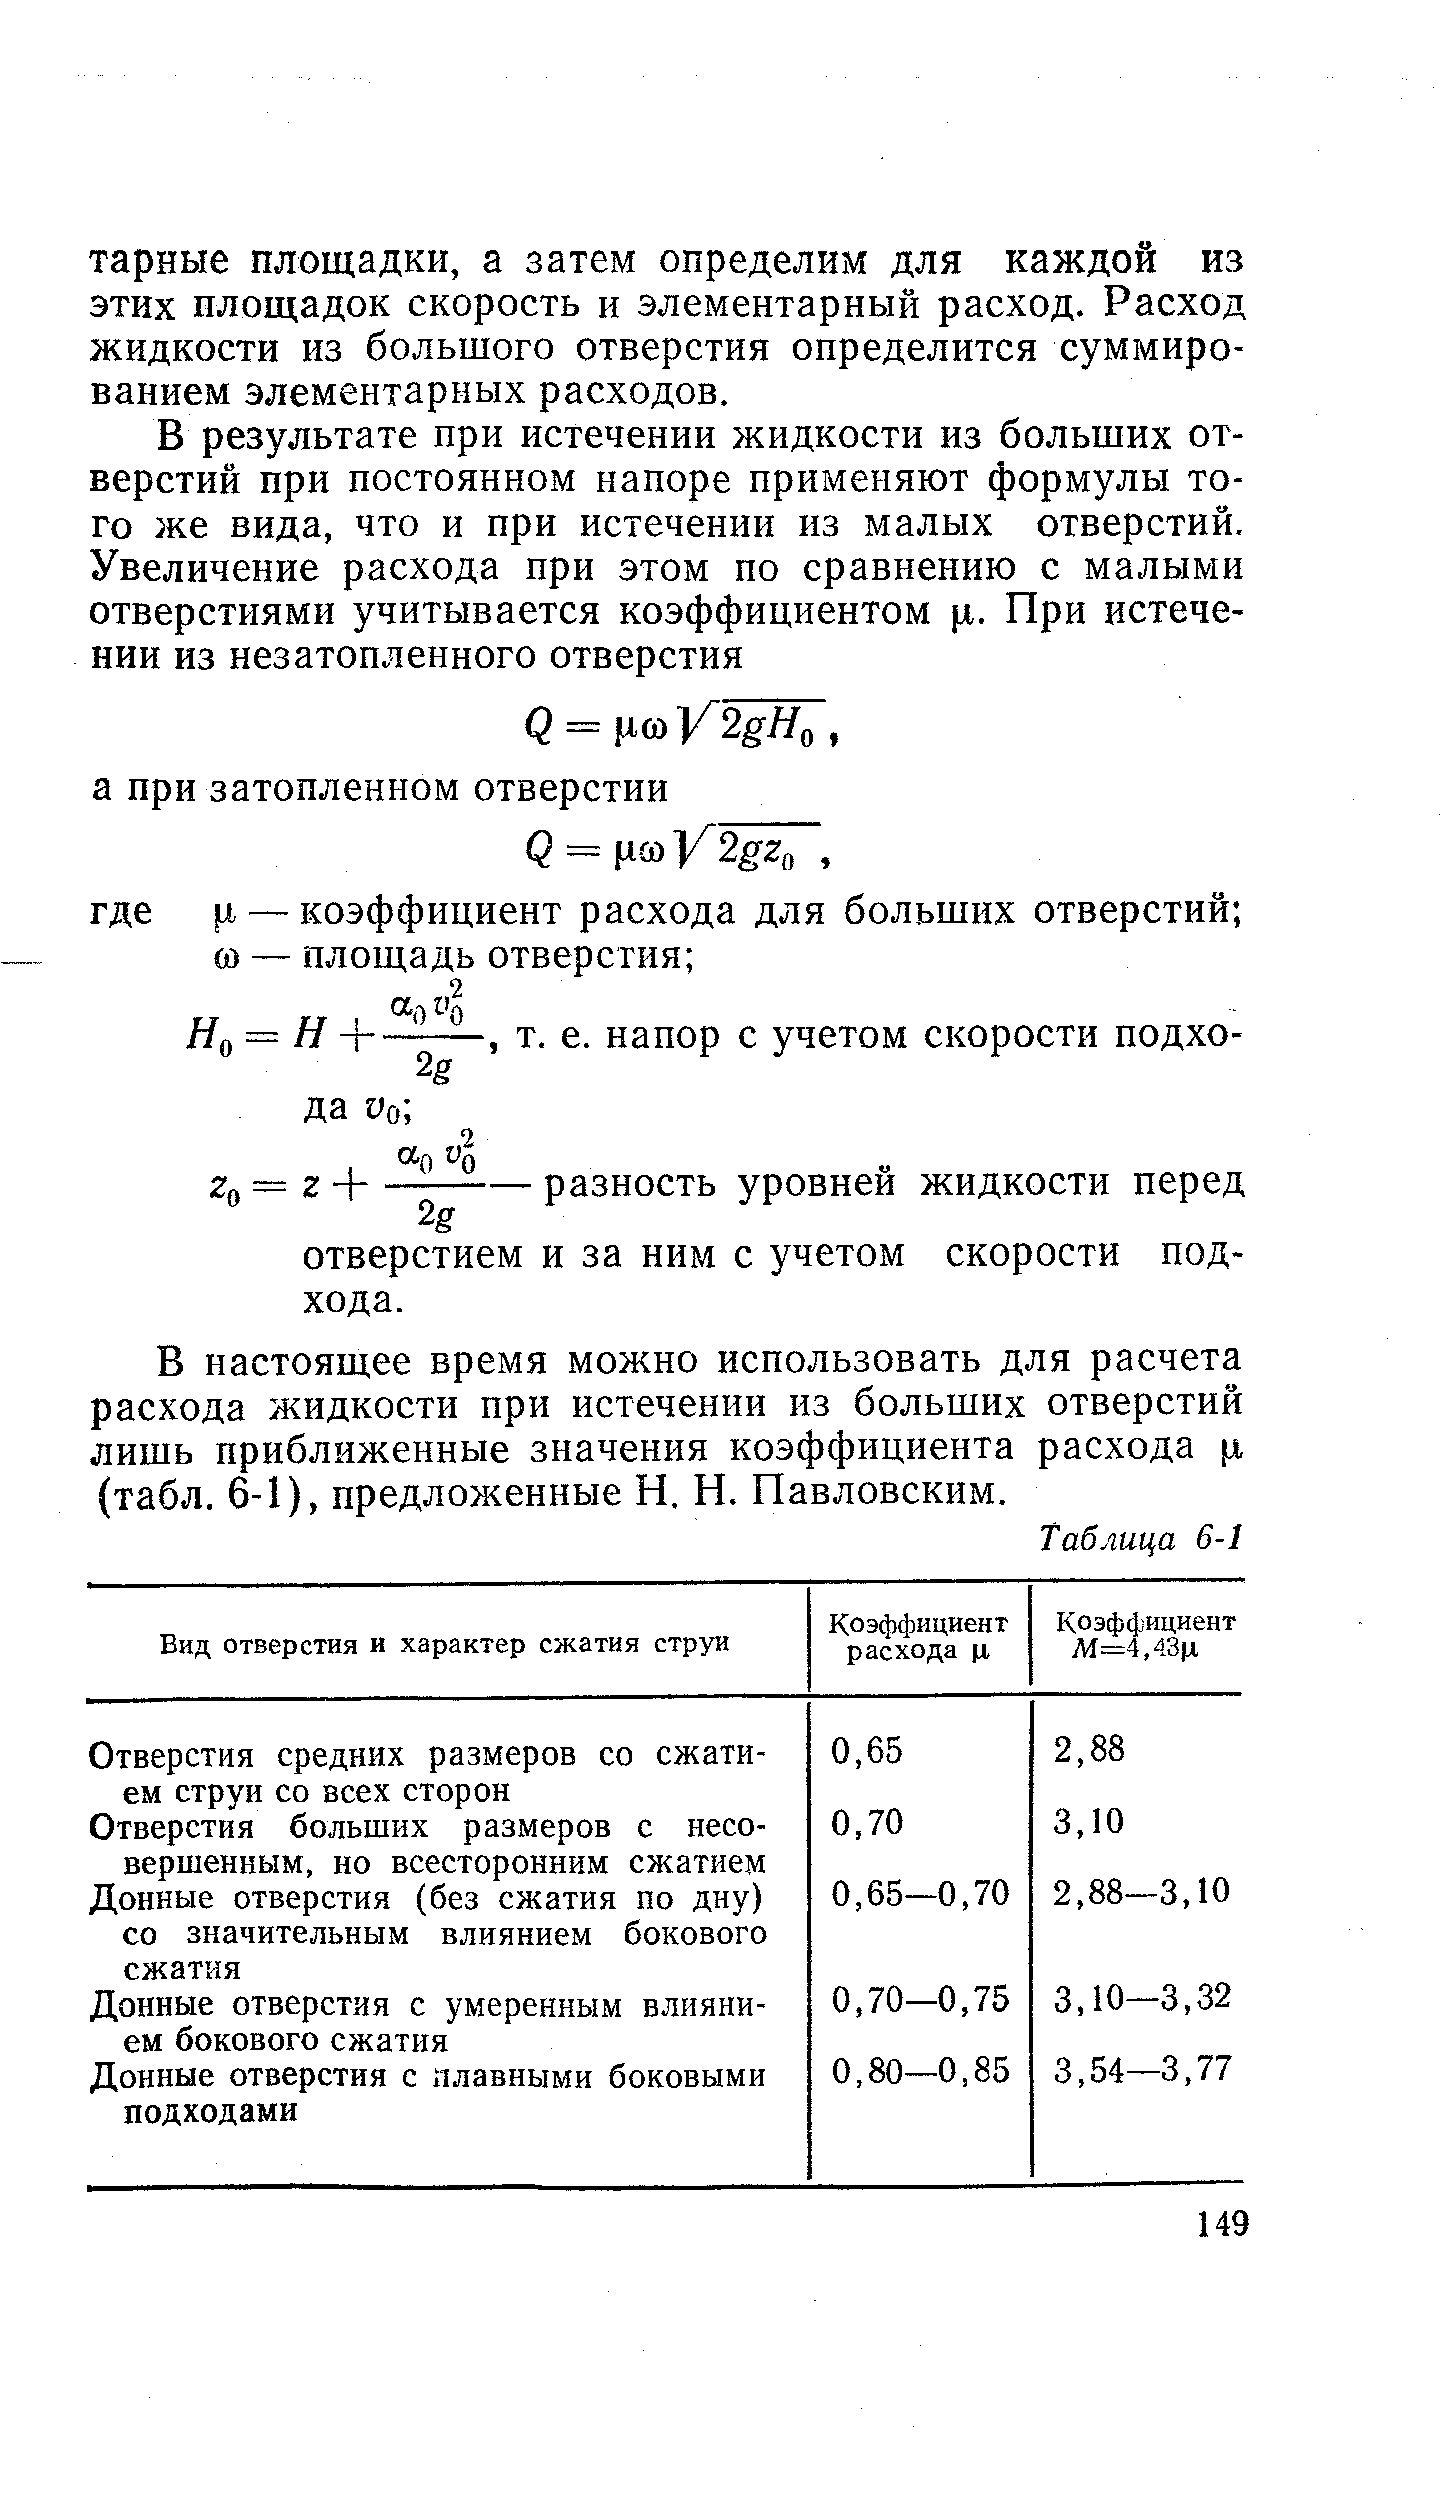 В настоящее время можно использовать для расчета расхода жидкости при истечении из больших отверстий лишь приближенные значения коэффициента расхода л (табл. 6-1), предложенные Н. Н. Павловским.
